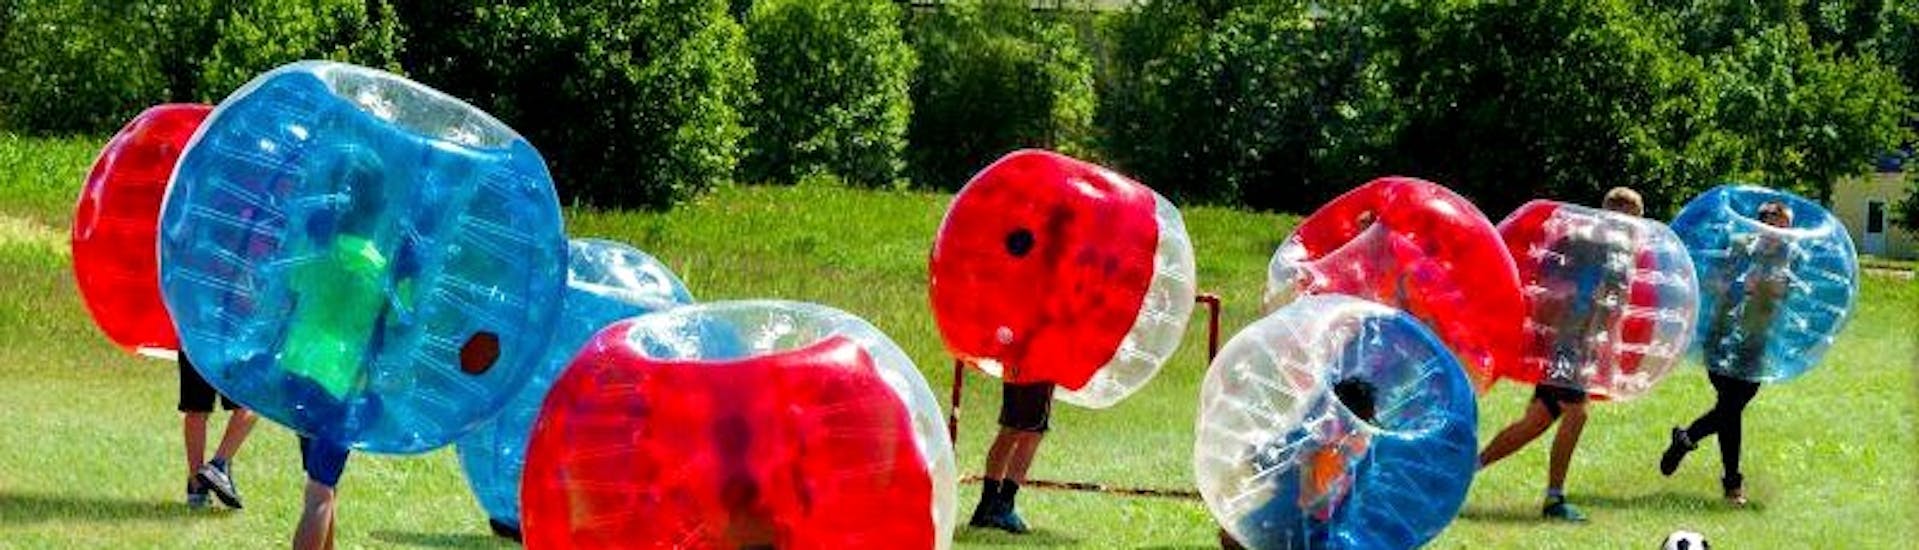 Groep speelt bubble voetbal tijdens het vrijgezellenfeest arrow tag + bubble voetbal gehost door Outdoor Center Baumgarten.